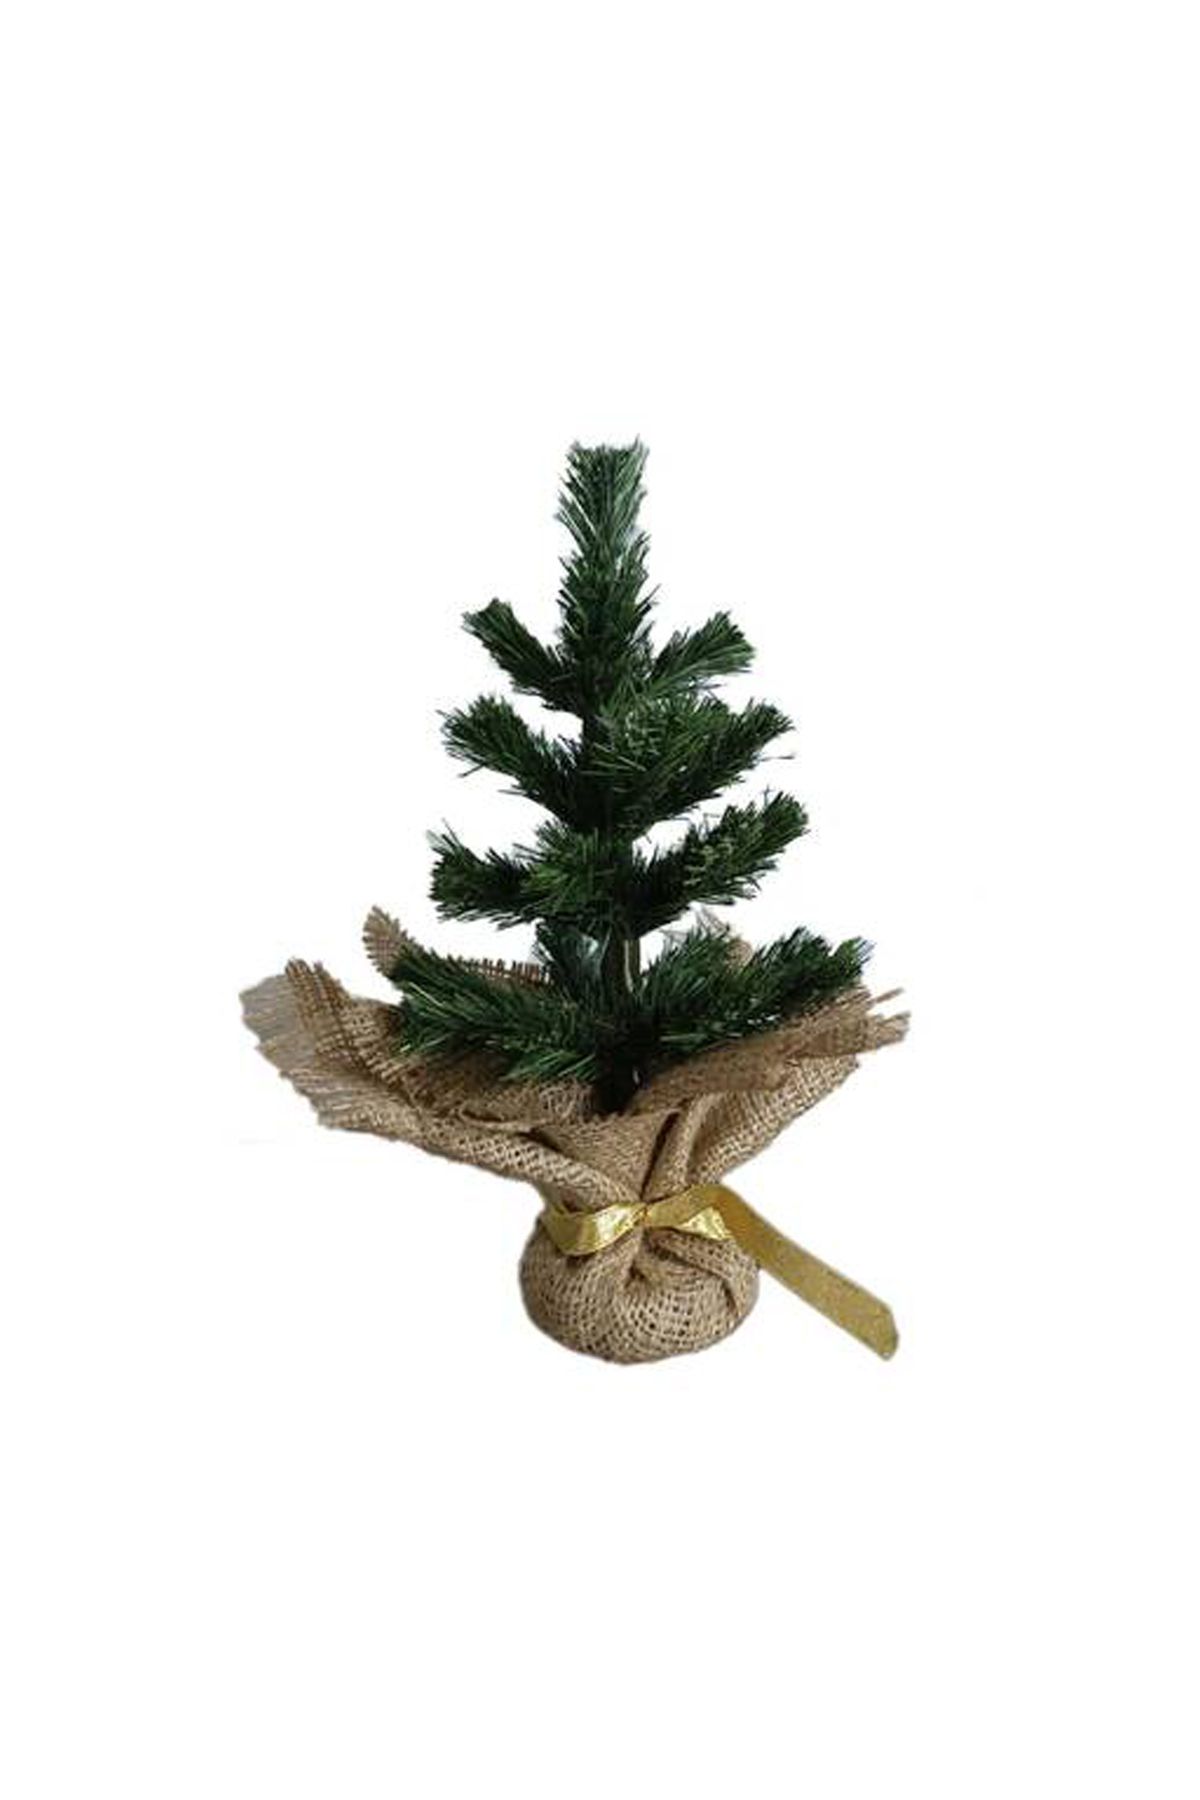 DM ONLINE Yılbaşı Masaüstü 20cm Çuhadarlı Çam Ağacı Hediyelik Yeni Yıl Çam Ağacı 1 Adet